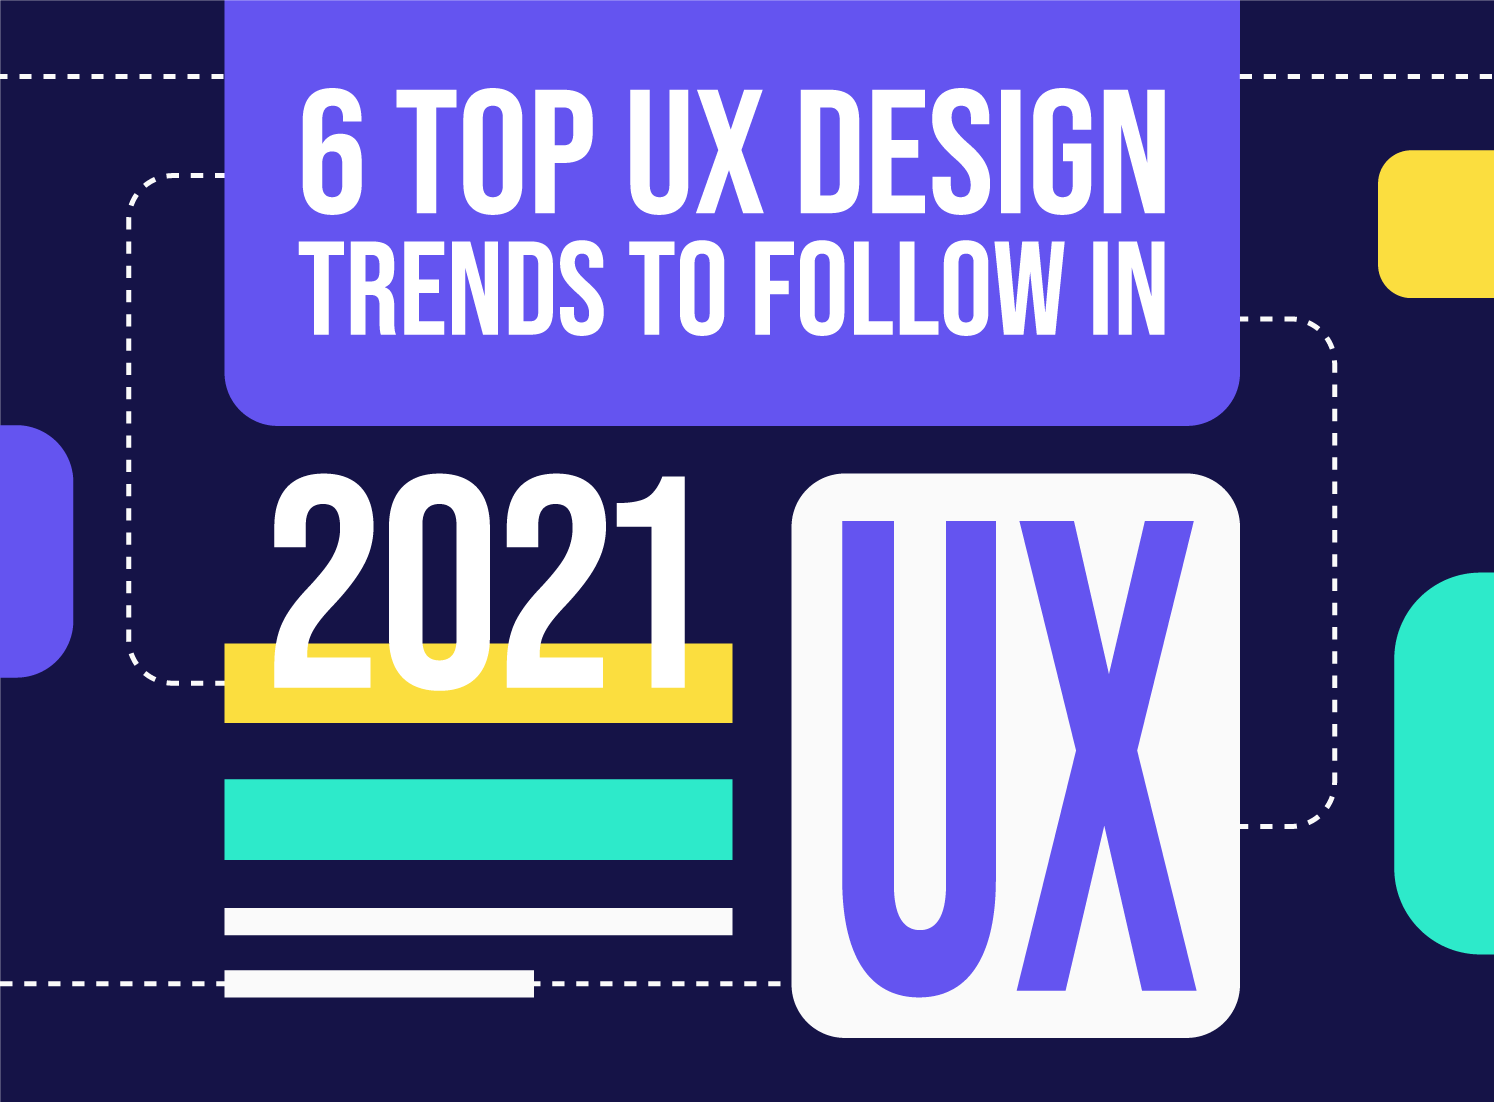 6 Top UX Design Trends in 2021 by Inkyy Design Studio